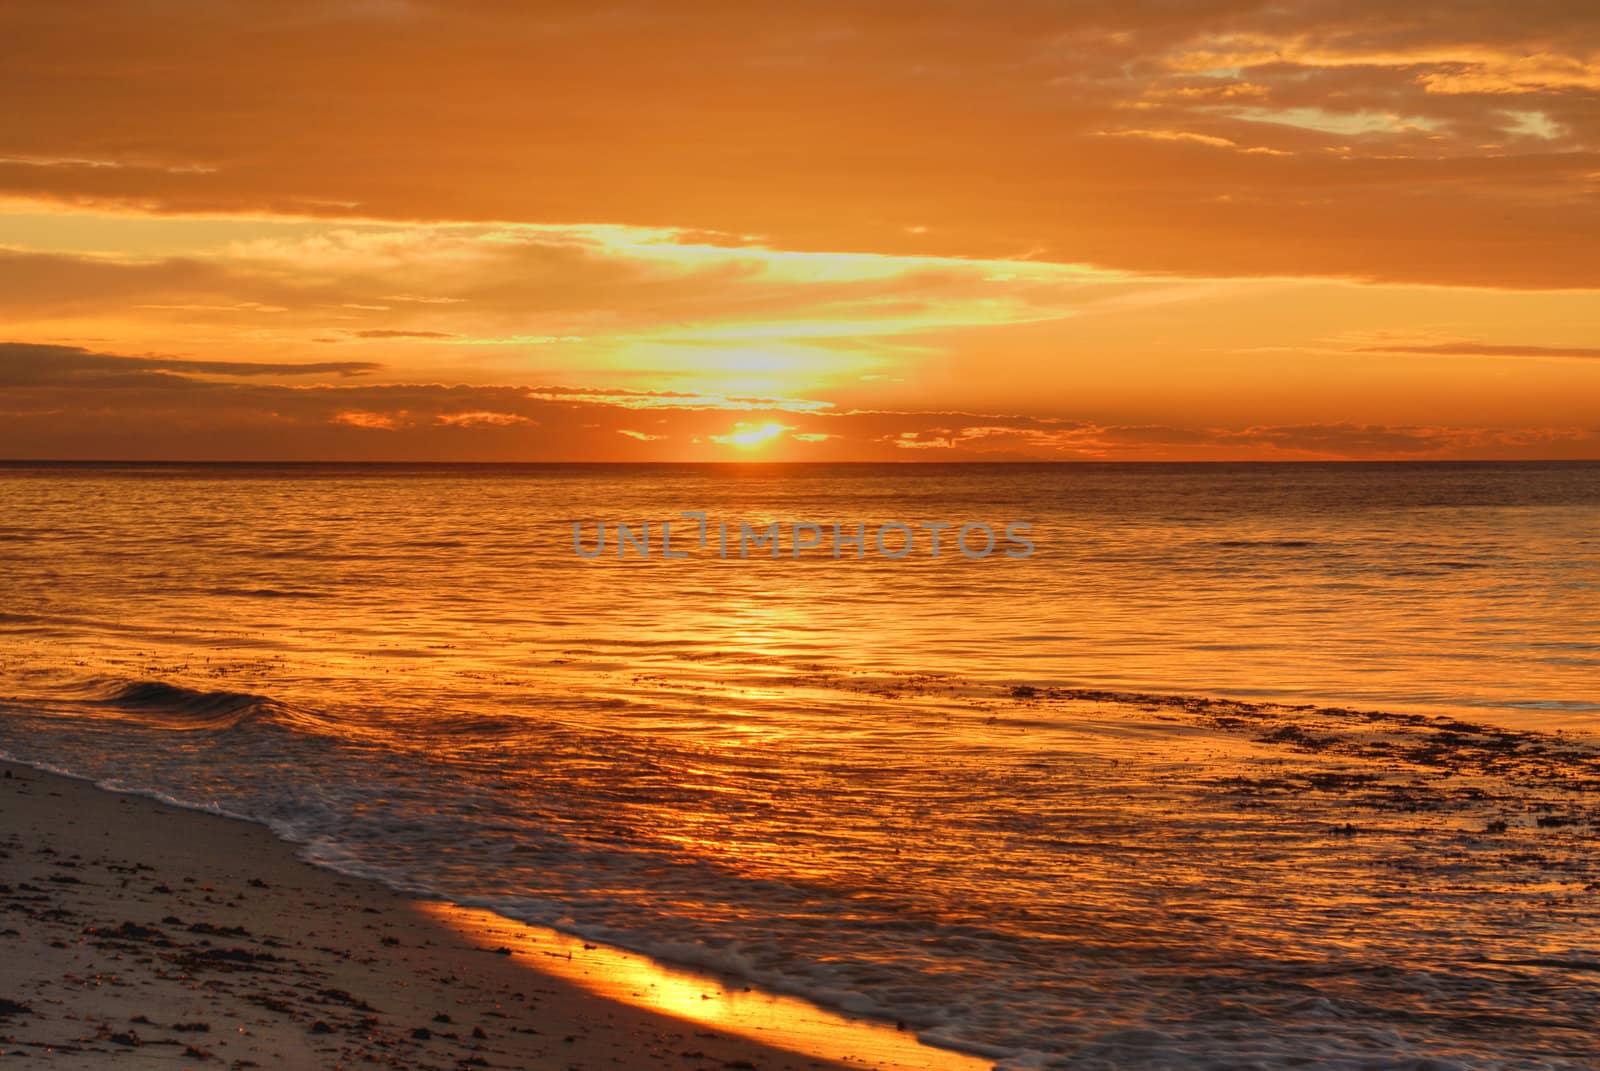 Sunset Beach by Imagevixen